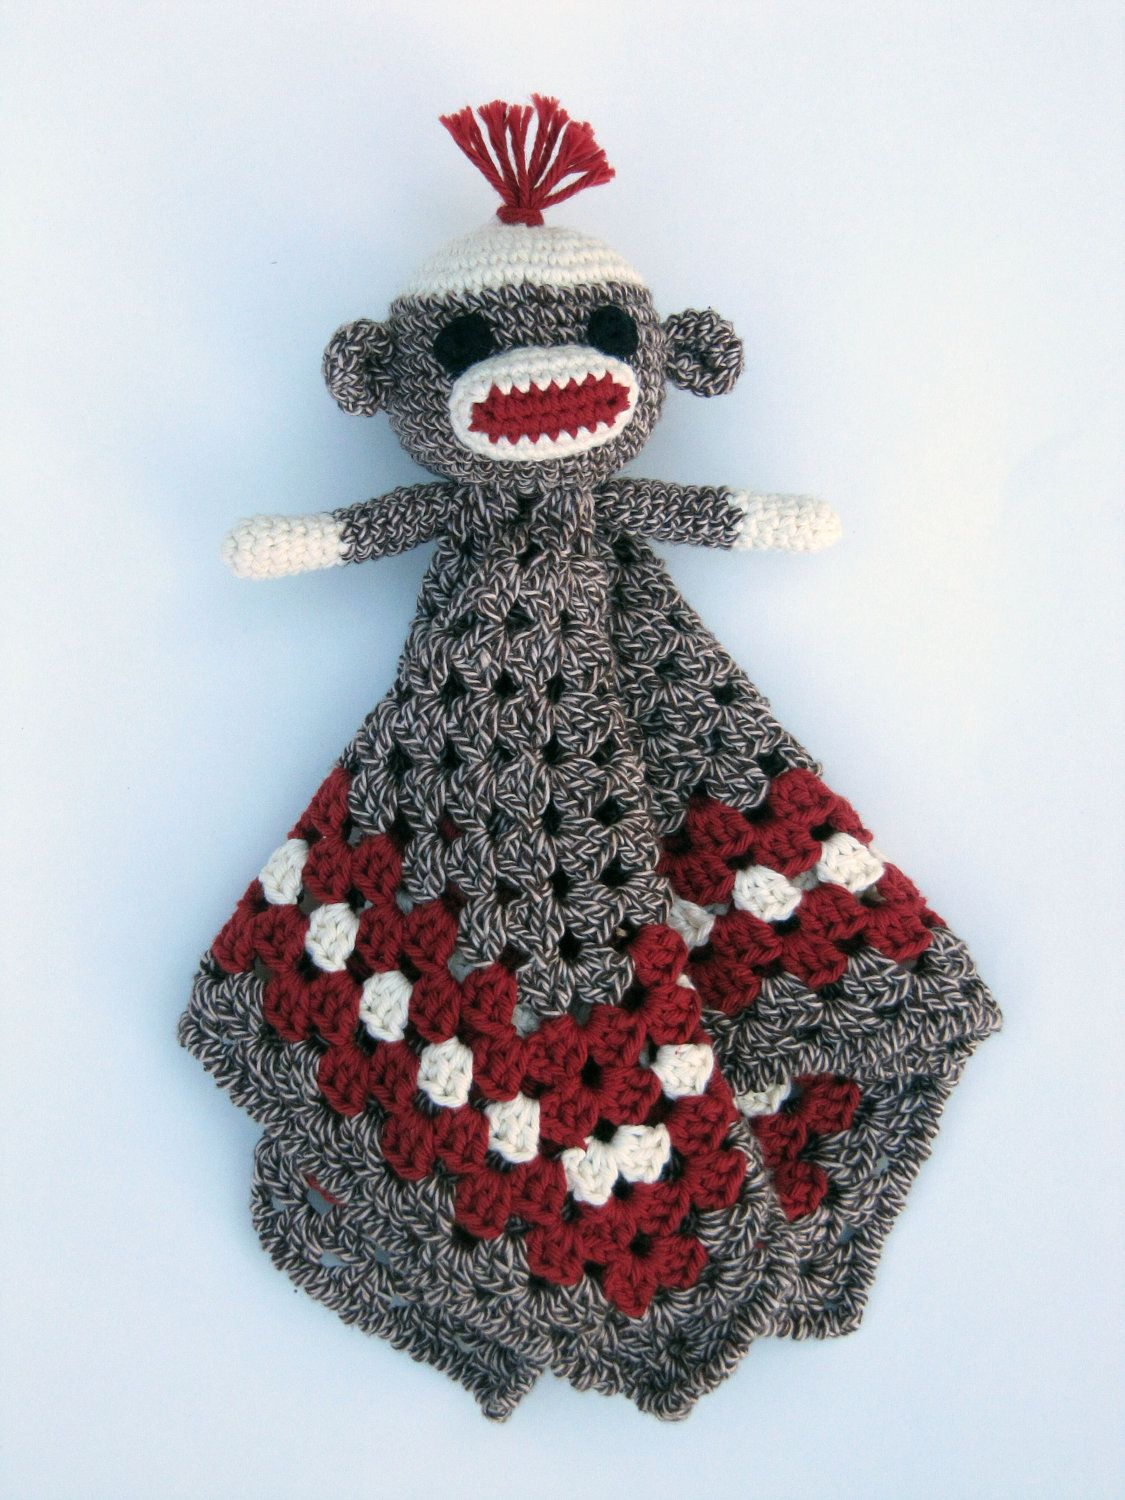 Sock Monkey Afghan Crochet Pattern Free Sock Monkey Lovey Crochet Pattern Instant Download Blankey